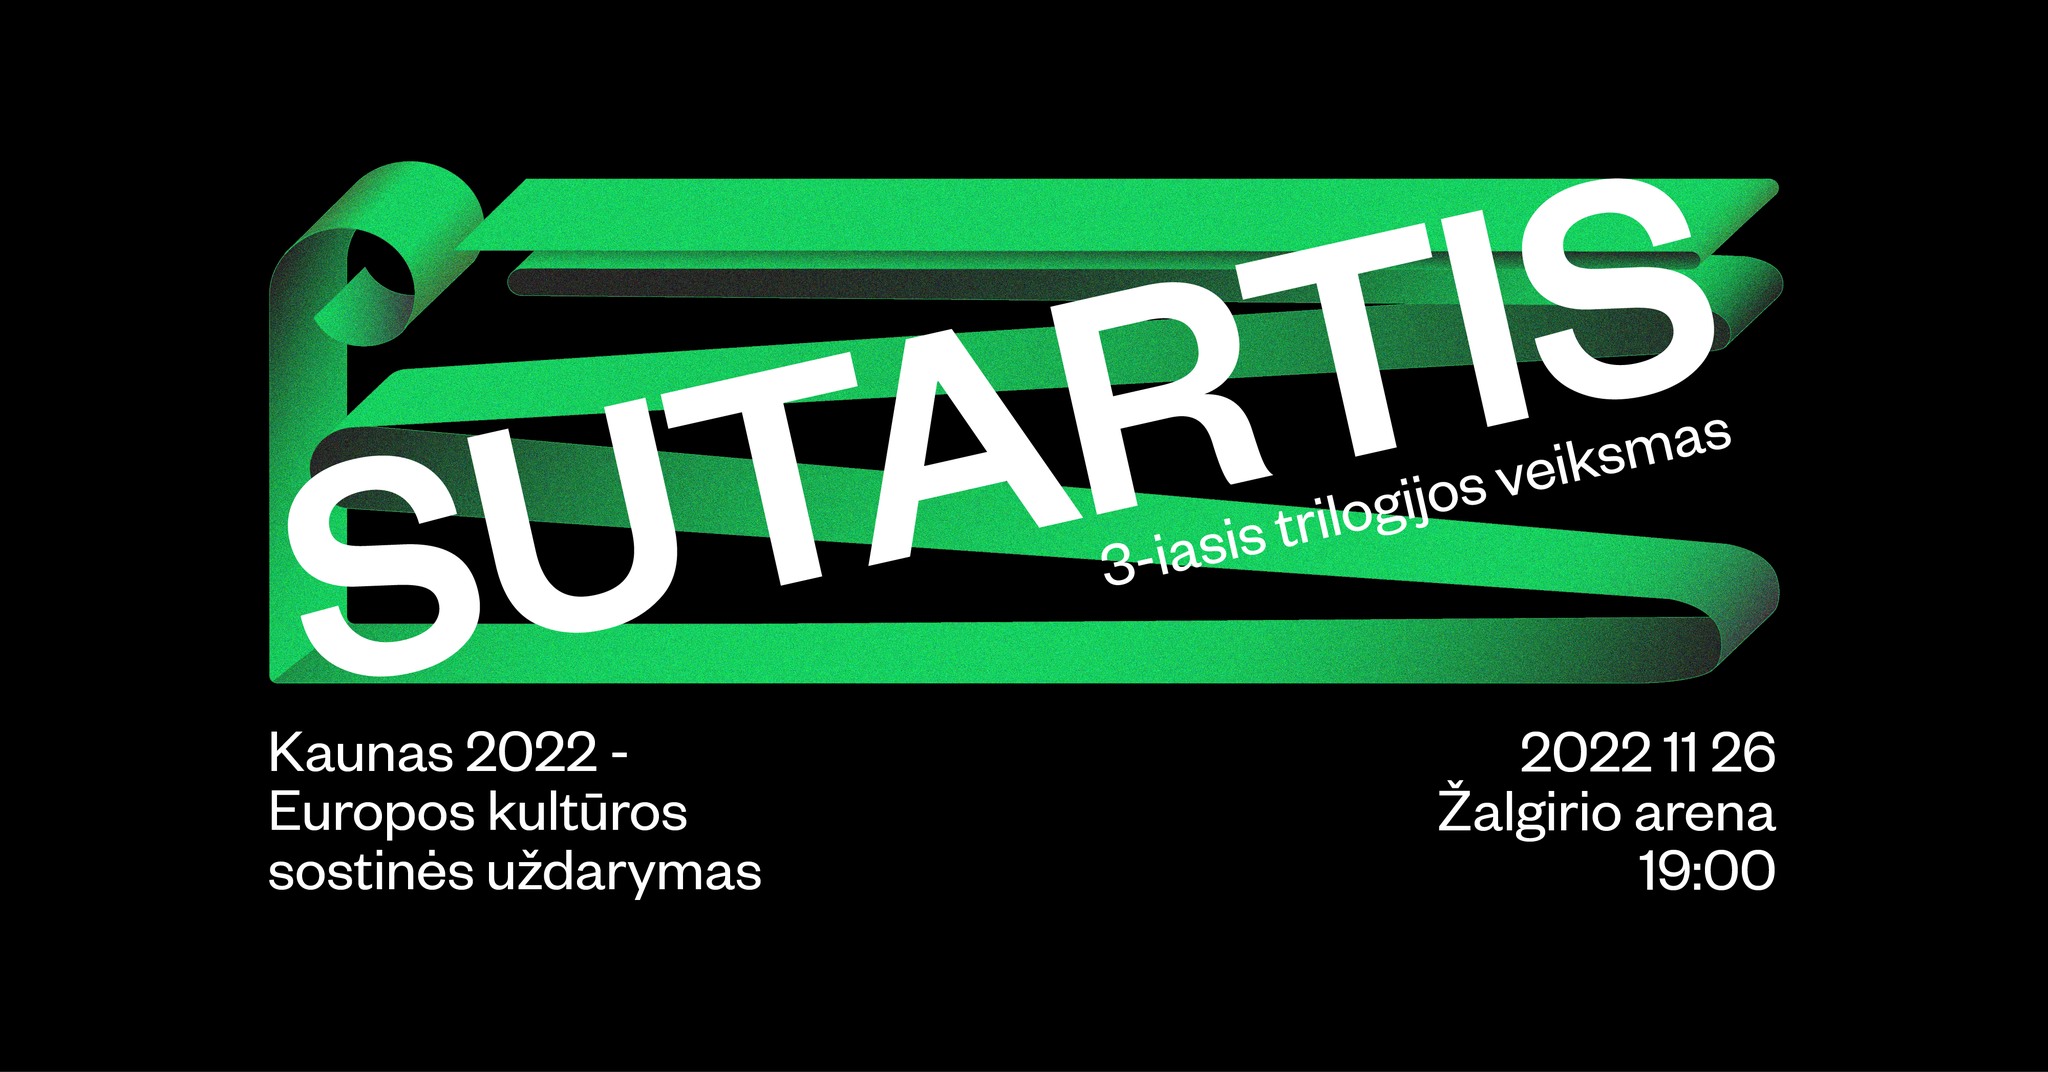 Kaunas 2022: Sutartis